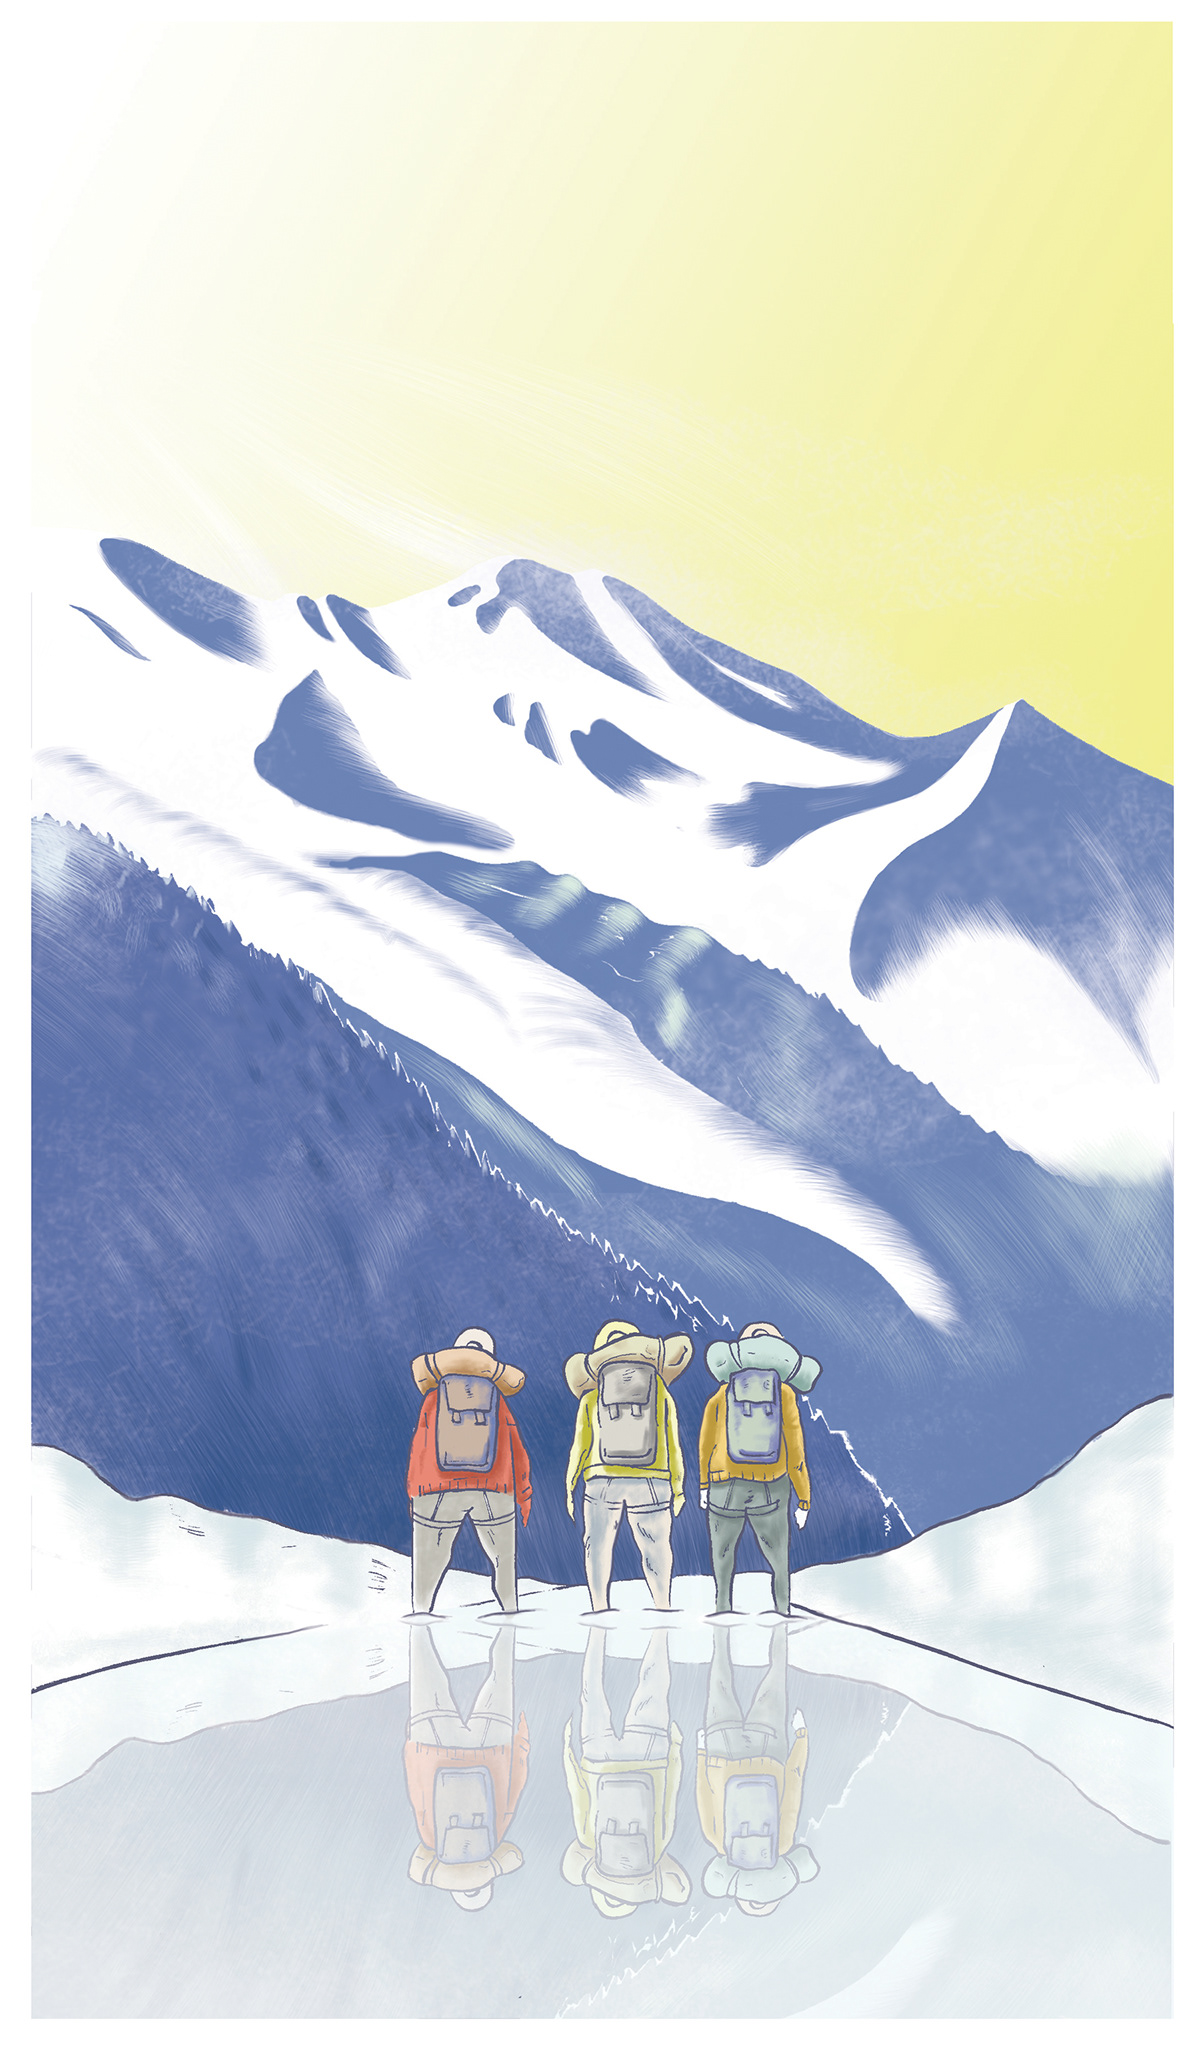 Proposition de couverture pour un guide d'alpinisme.